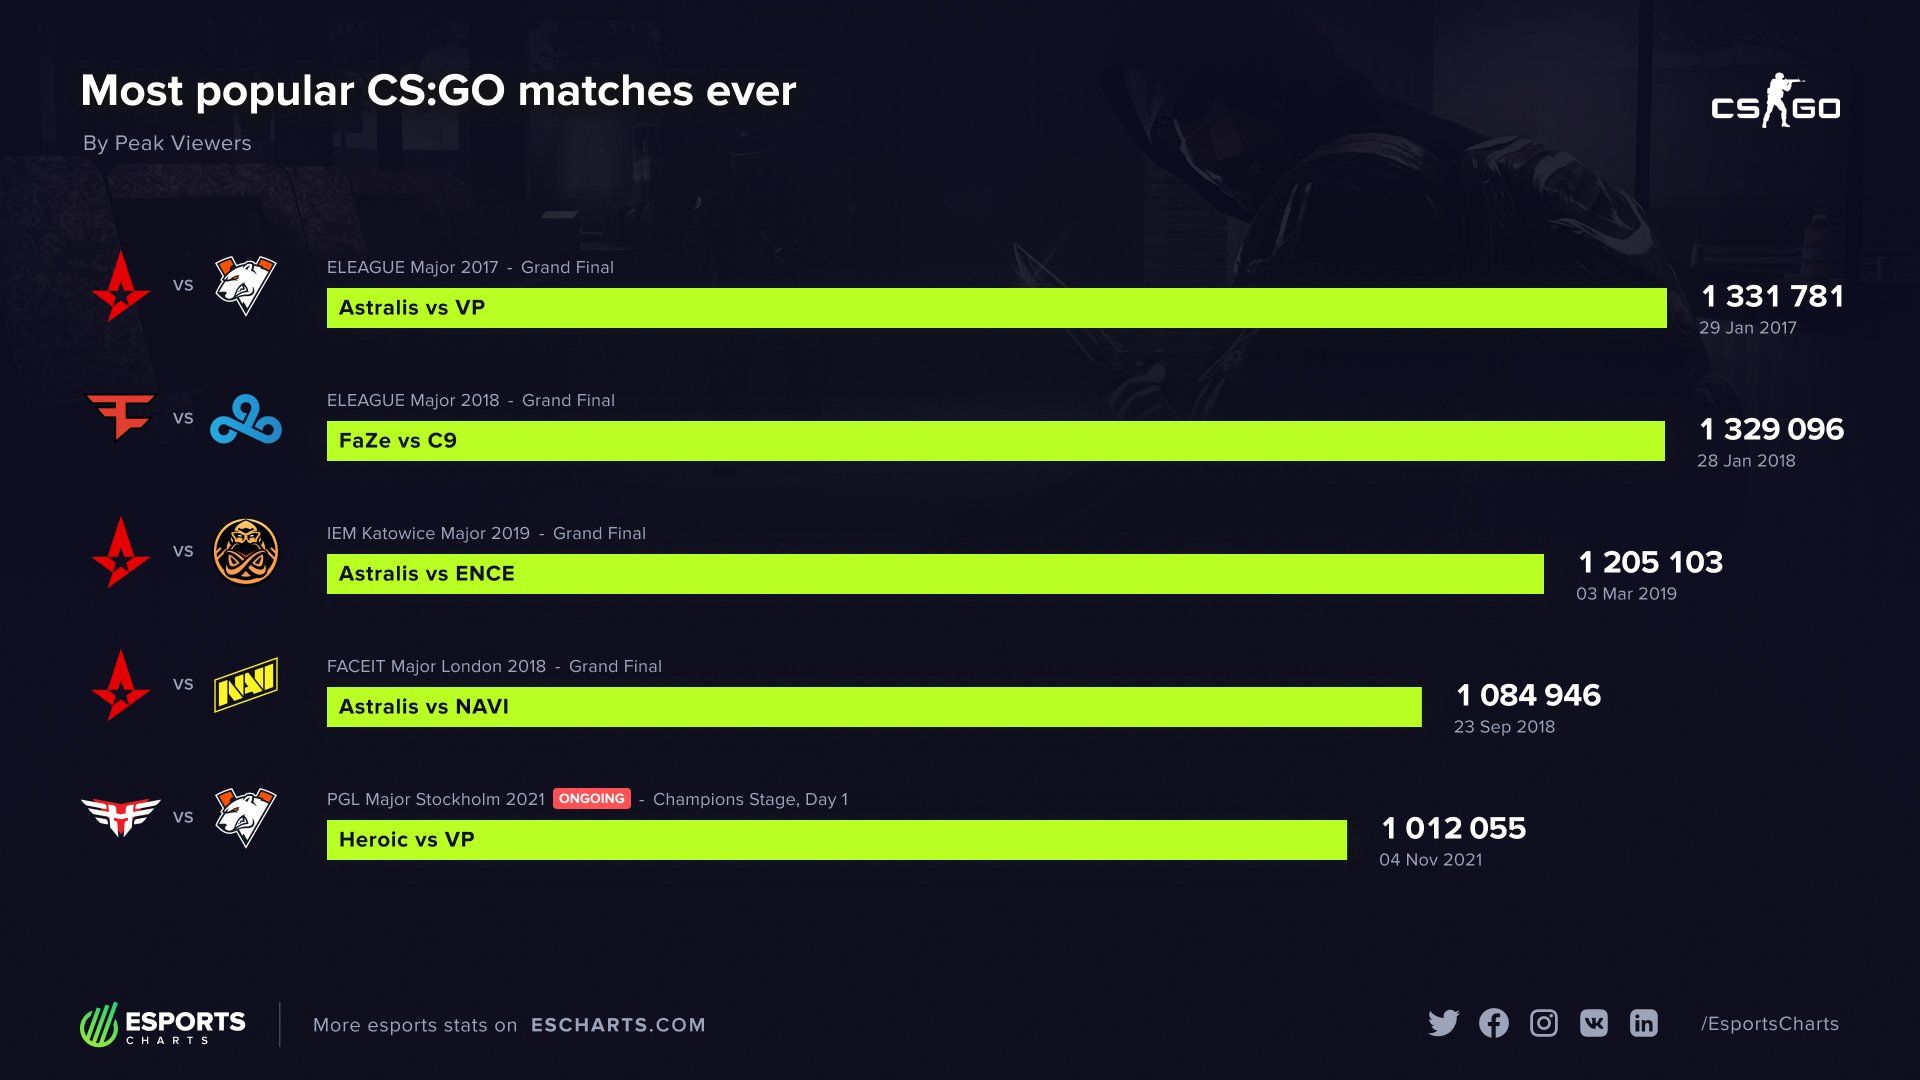 Самые популярные матчи в истории CS:GO. Источник: Esports Charts